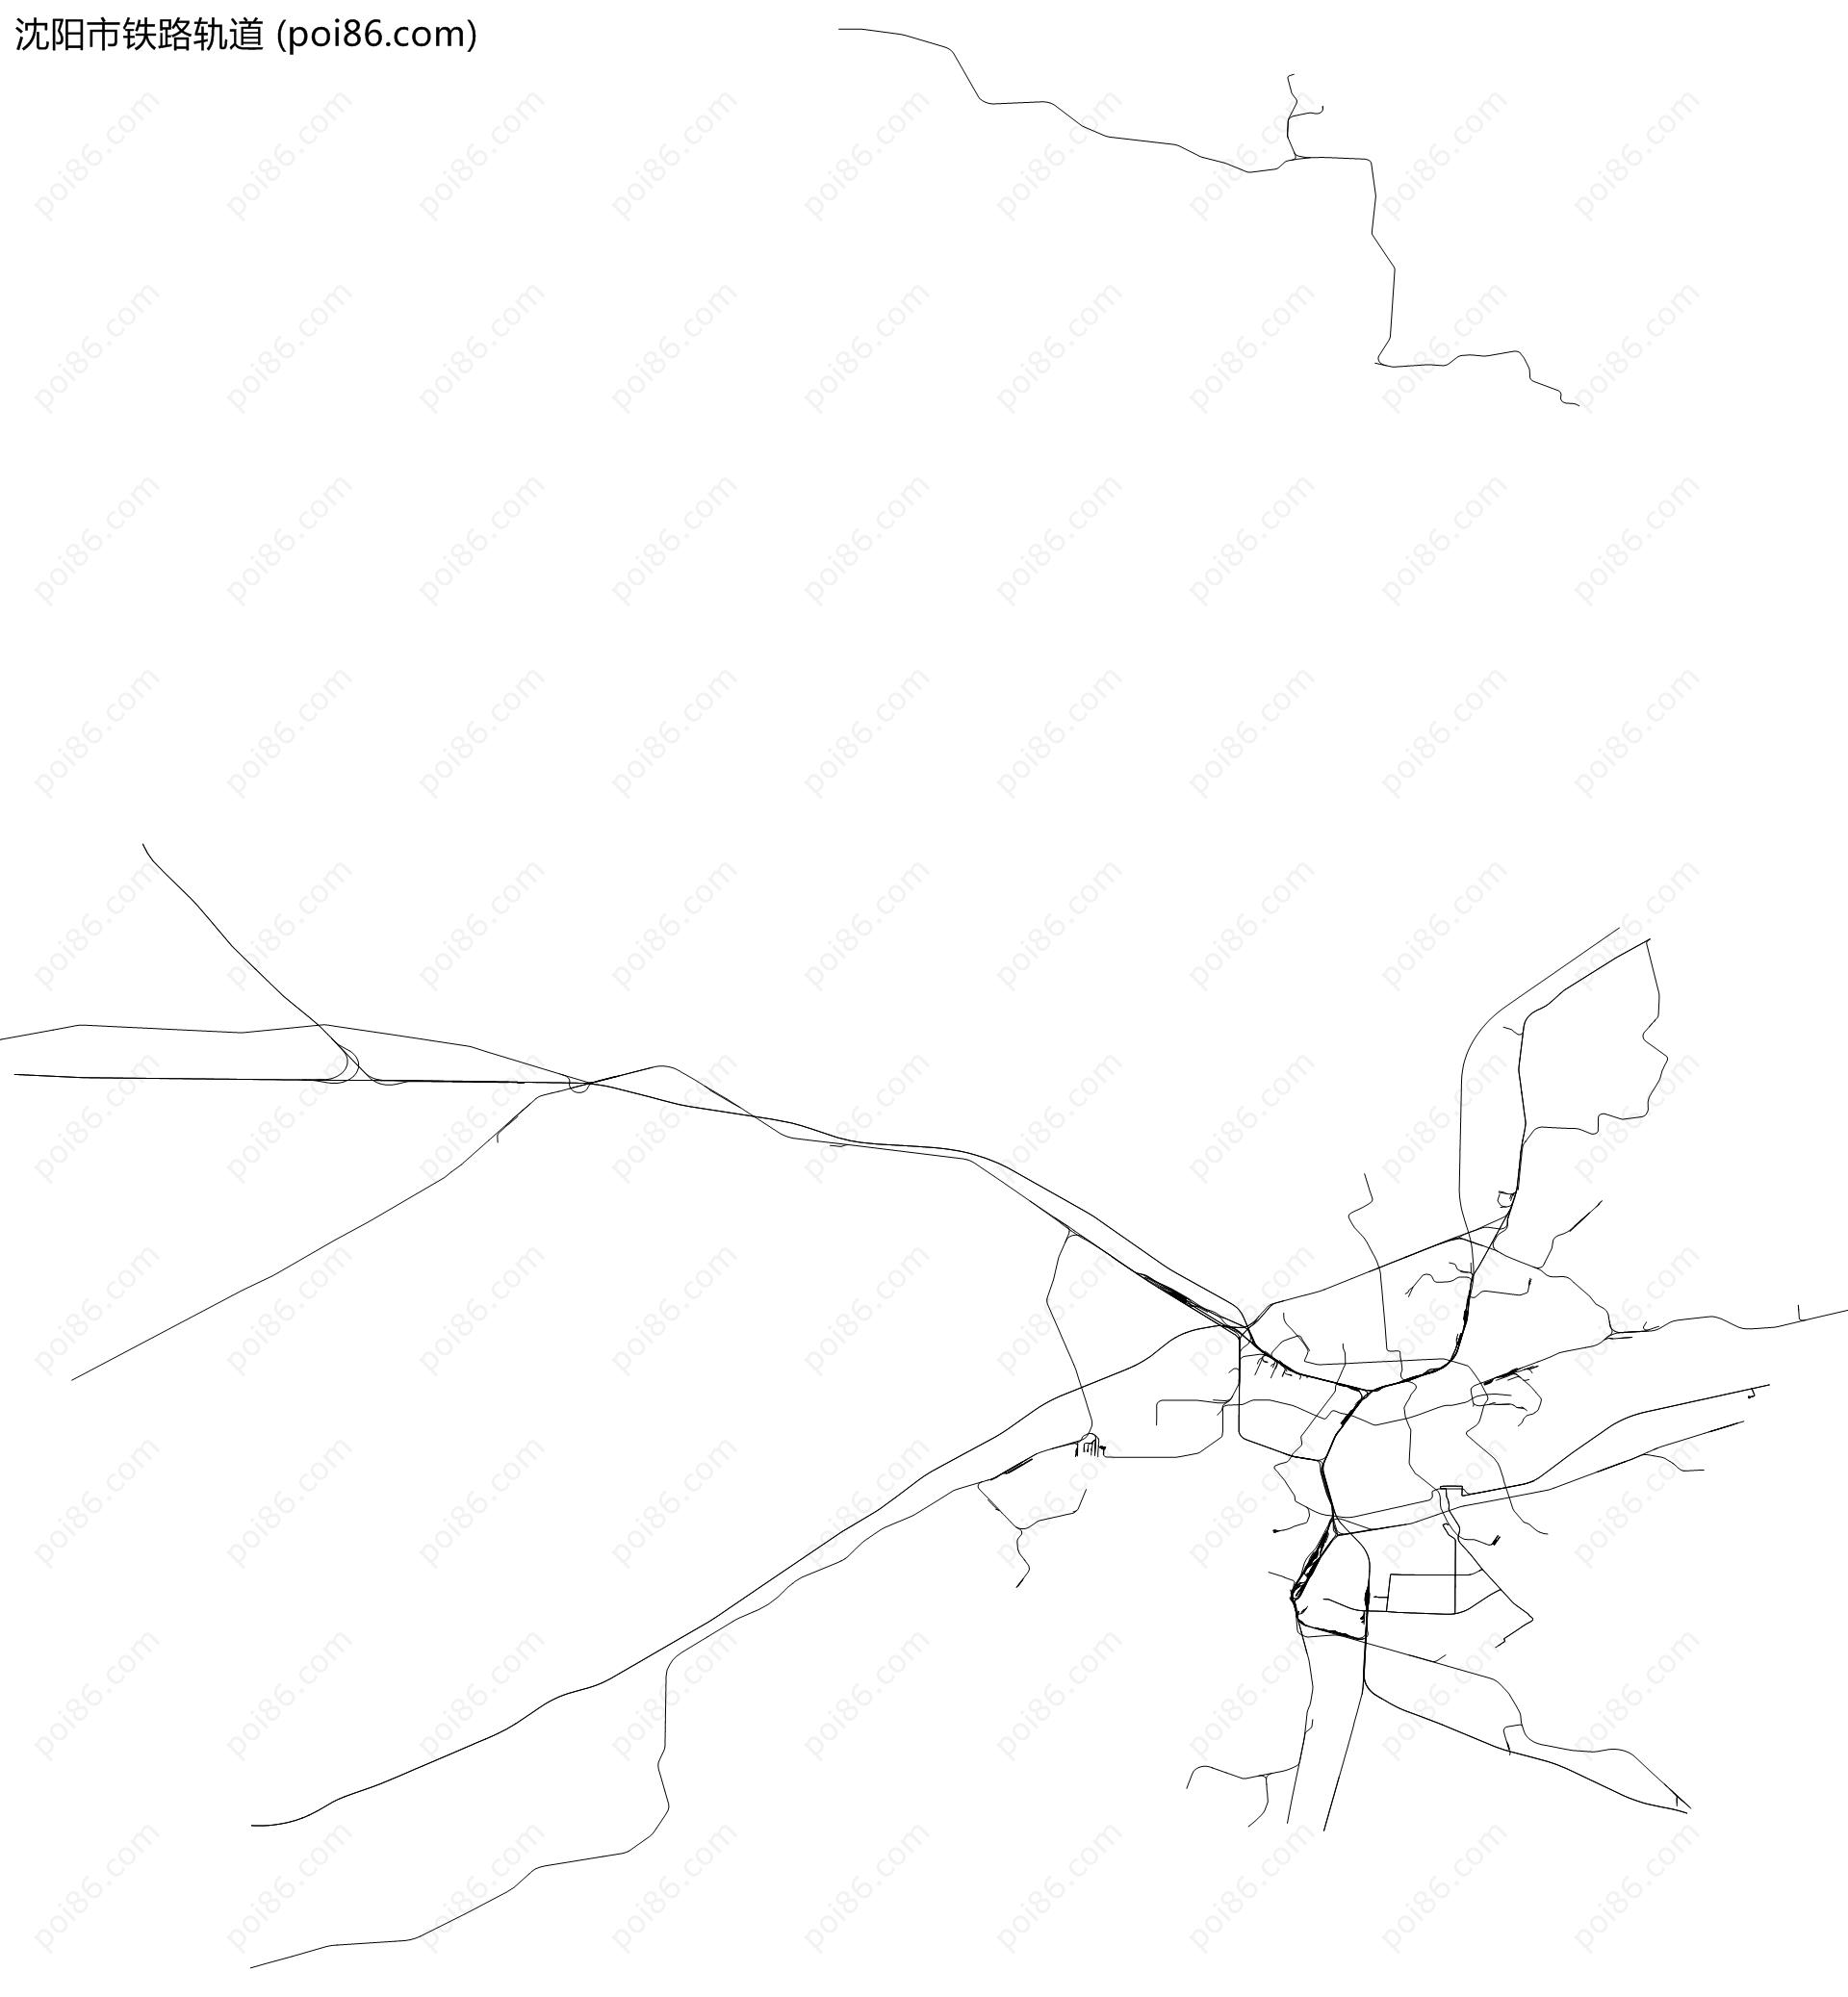 沈阳市铁路轨道地图